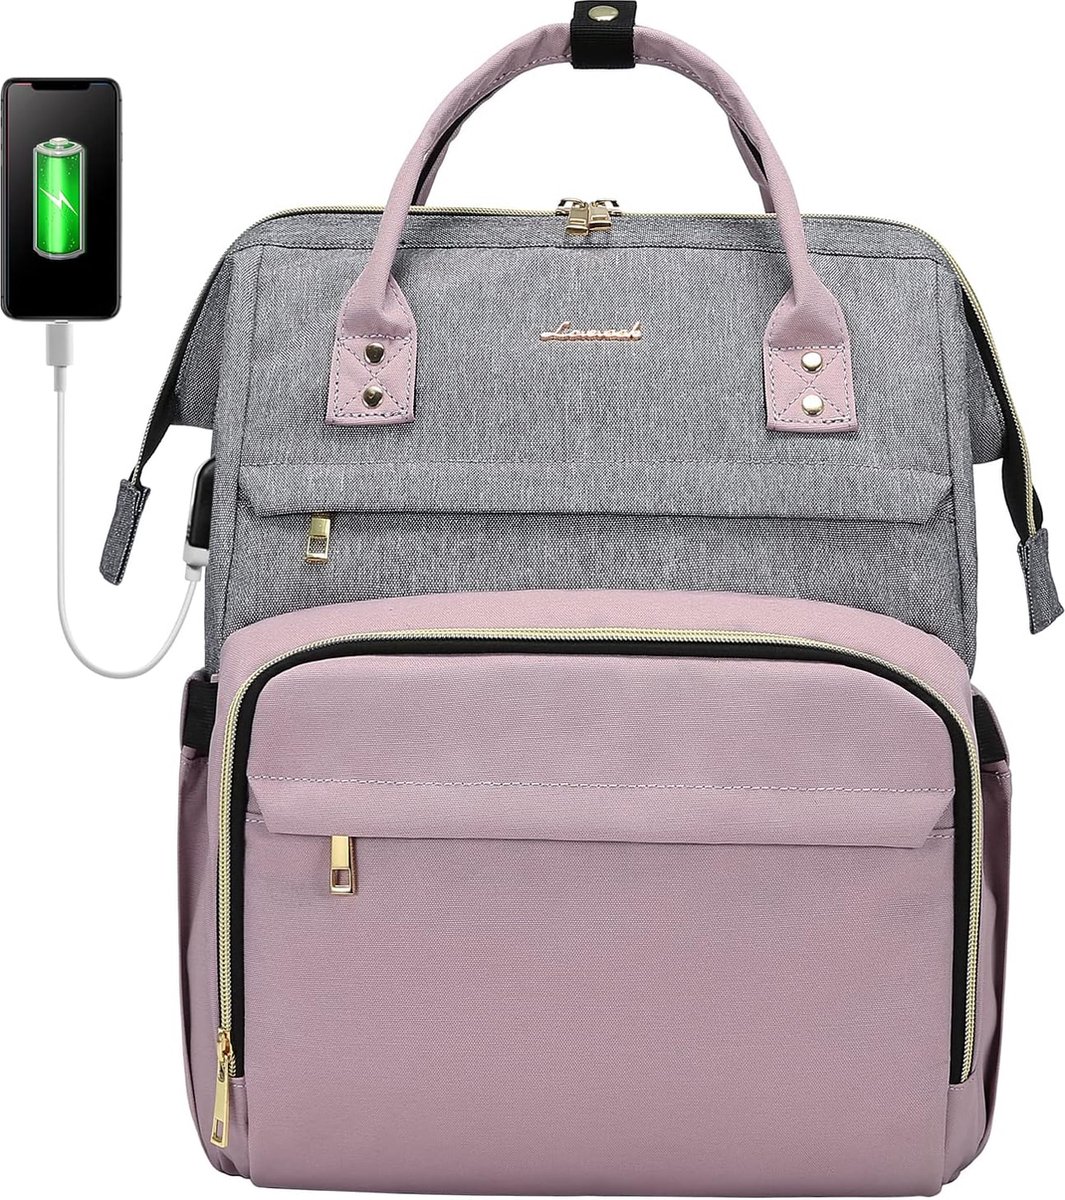 Laptoptas 15.6 inch - Grijs/roze - Rugzak voor laptops - 41 x 30 x 19 cm - Rugtas voor school, werk, kantoor, reizen